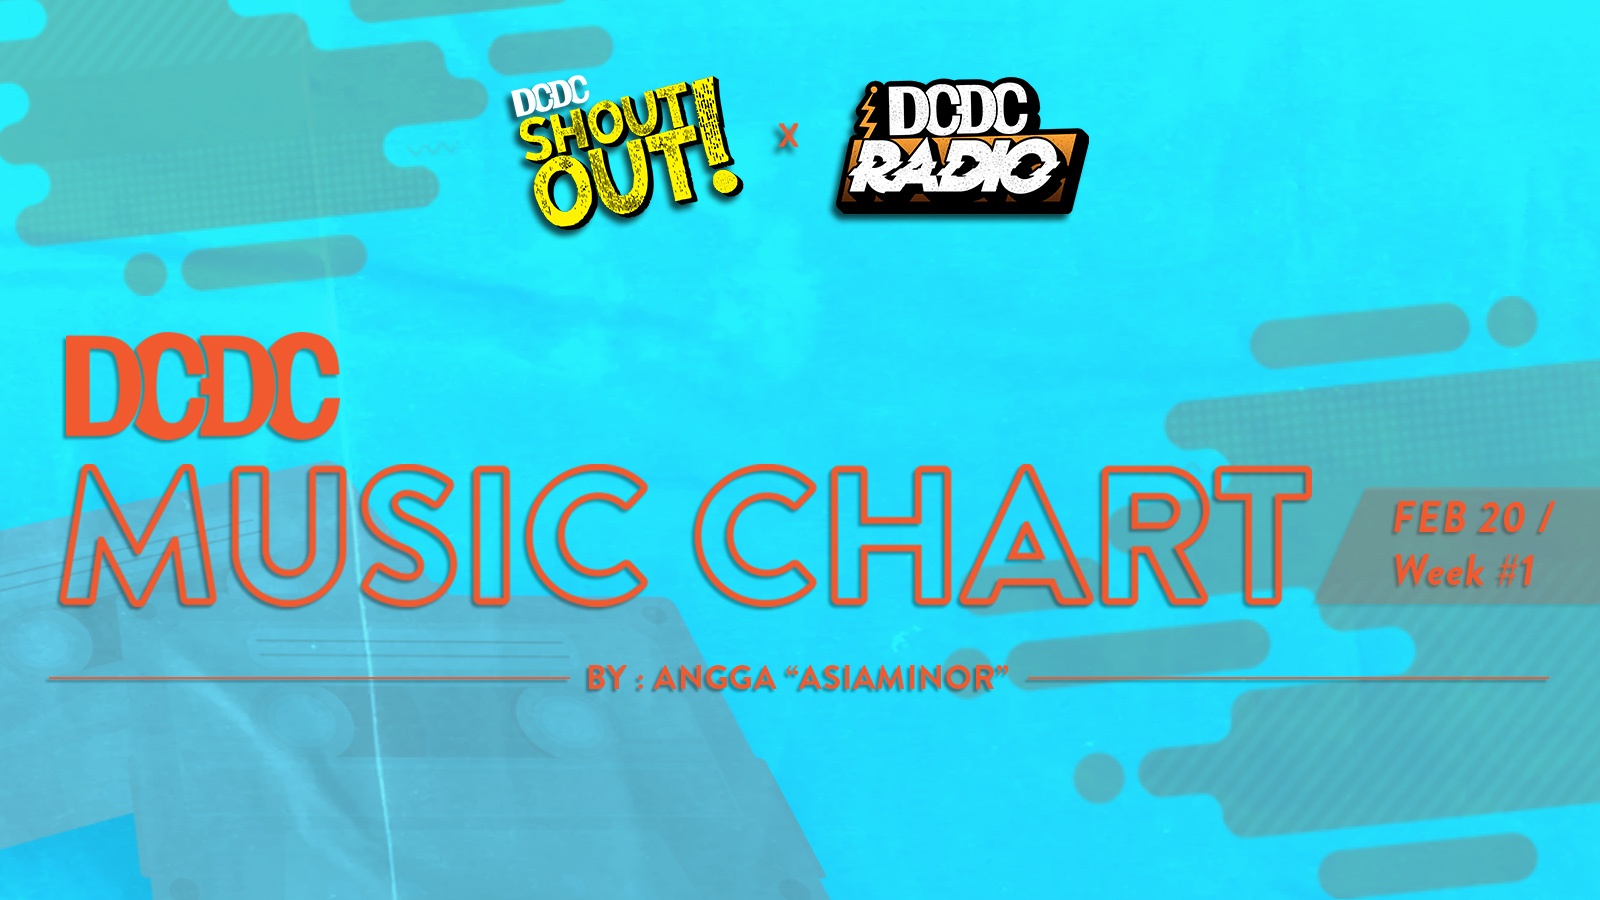 DCDC Music Chart - #1st Week of Februari 2020